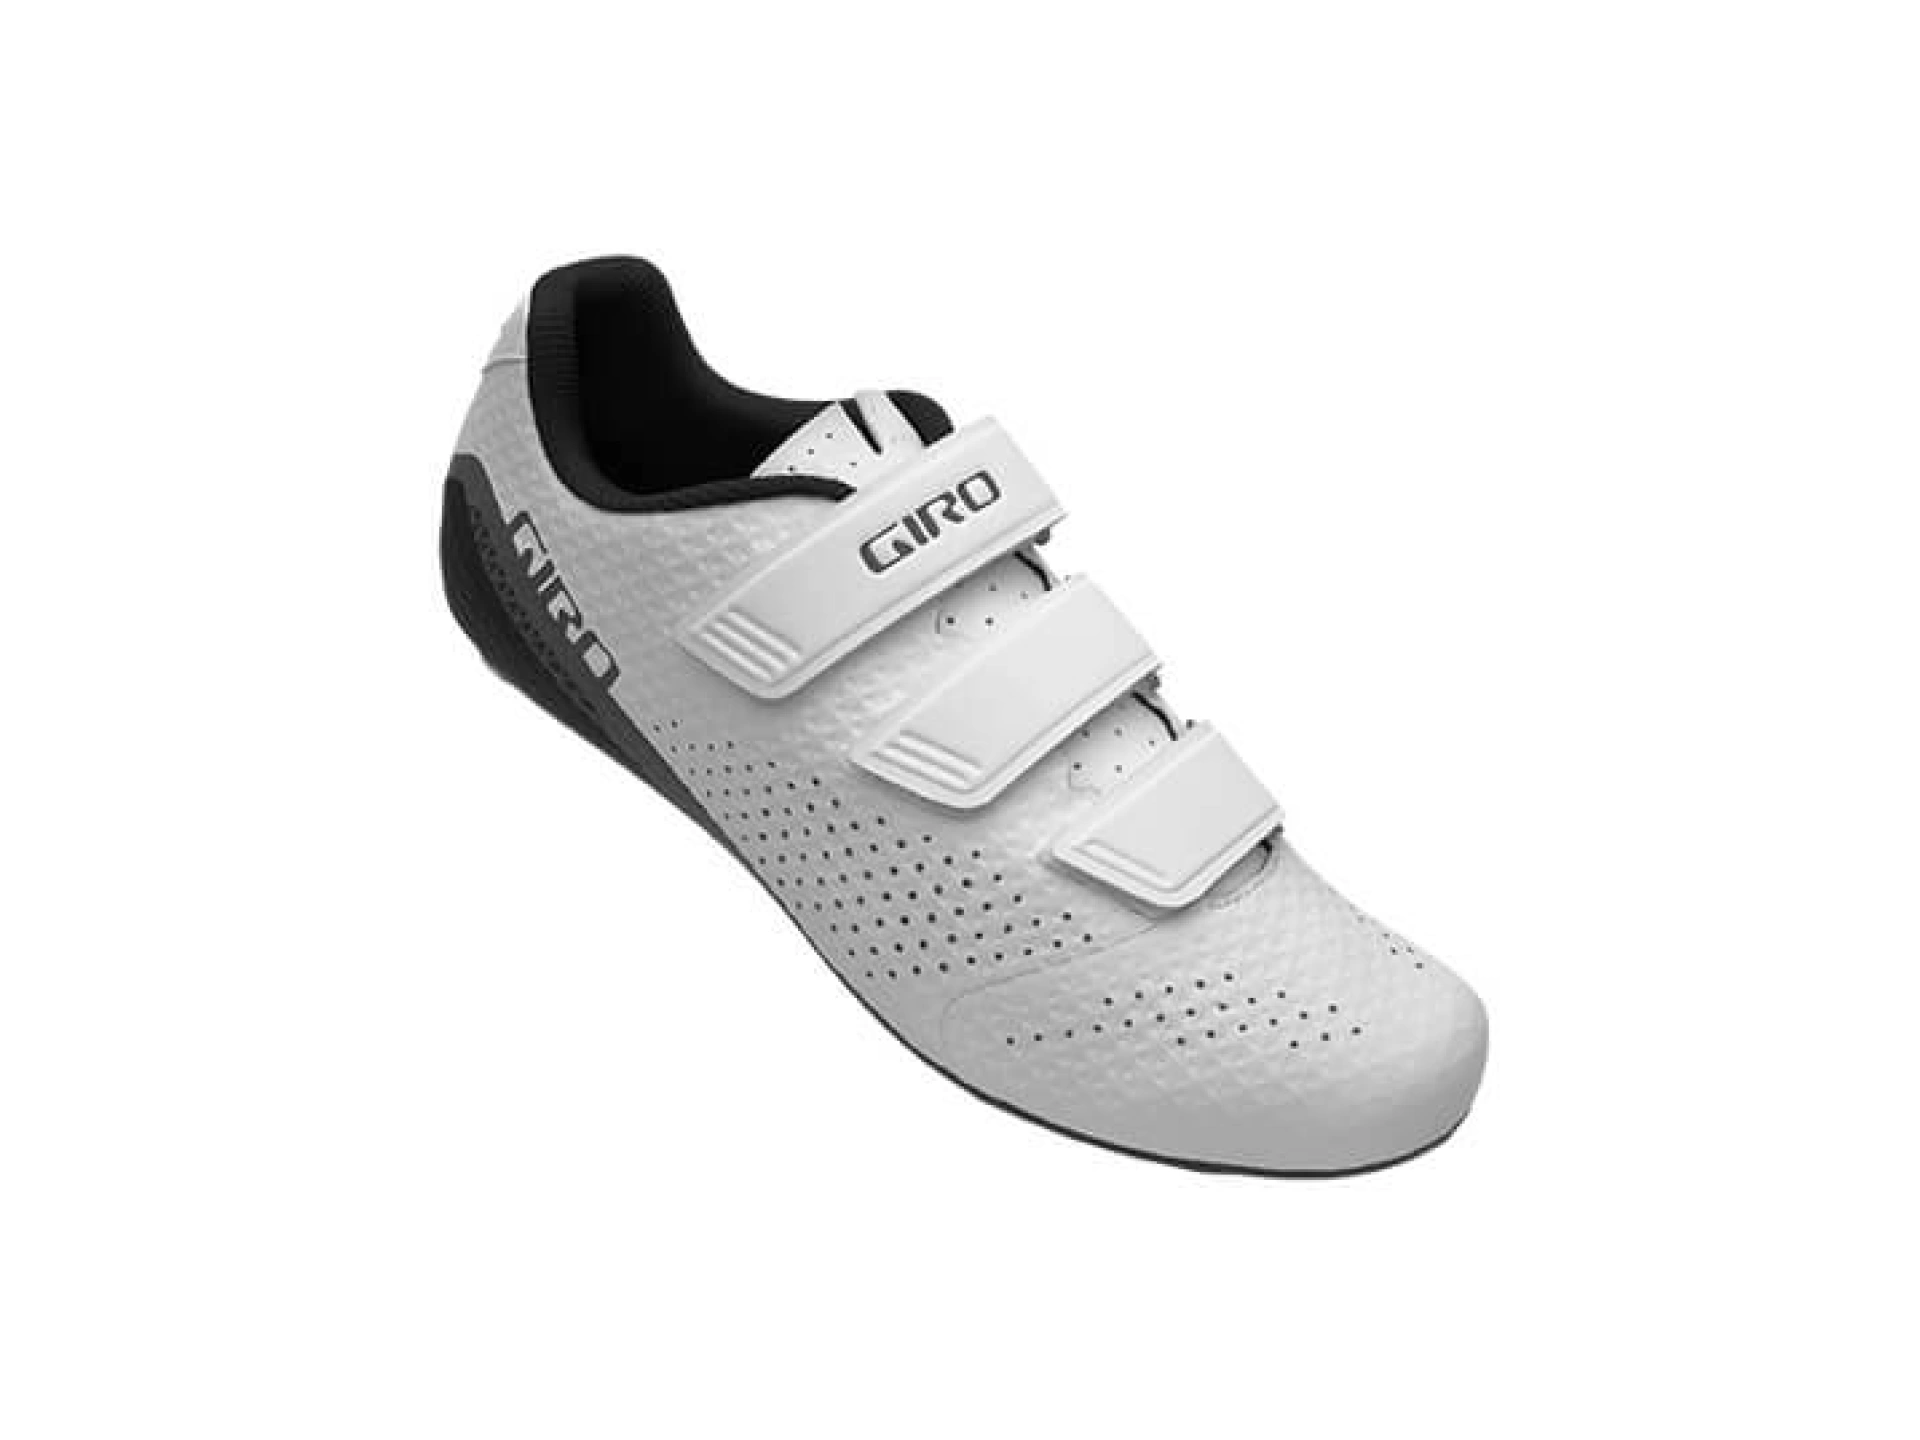 Giro Gf Stylus Spd Ayakkabı Beyaz 43 Numara